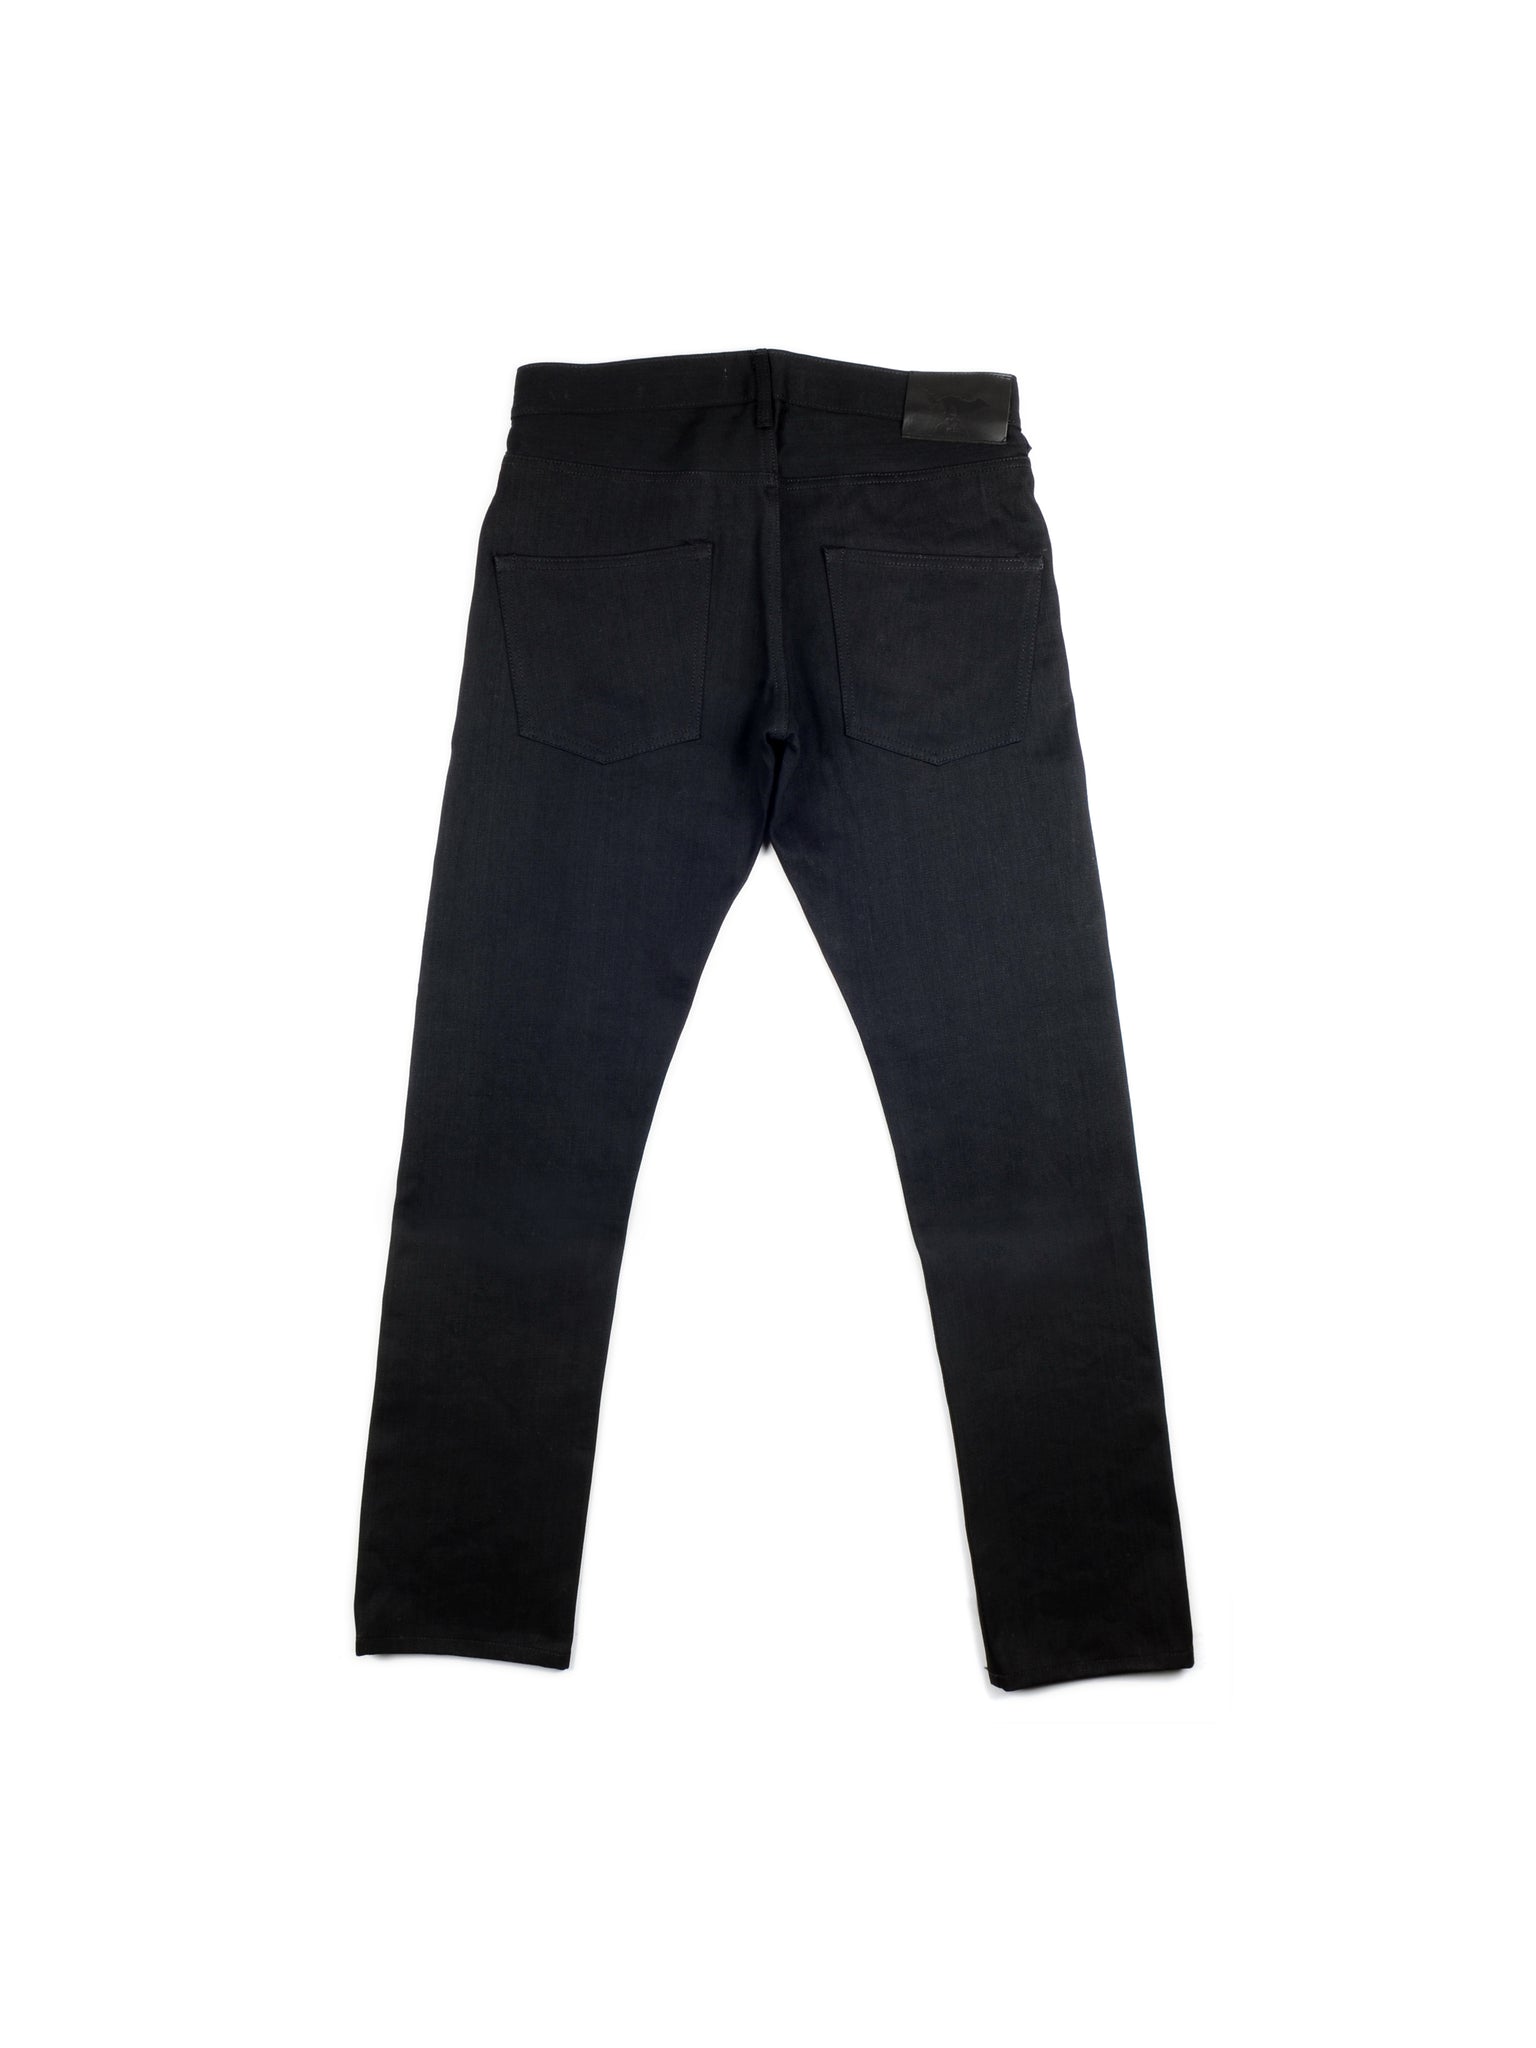 #1 men slim selvedge black jeans